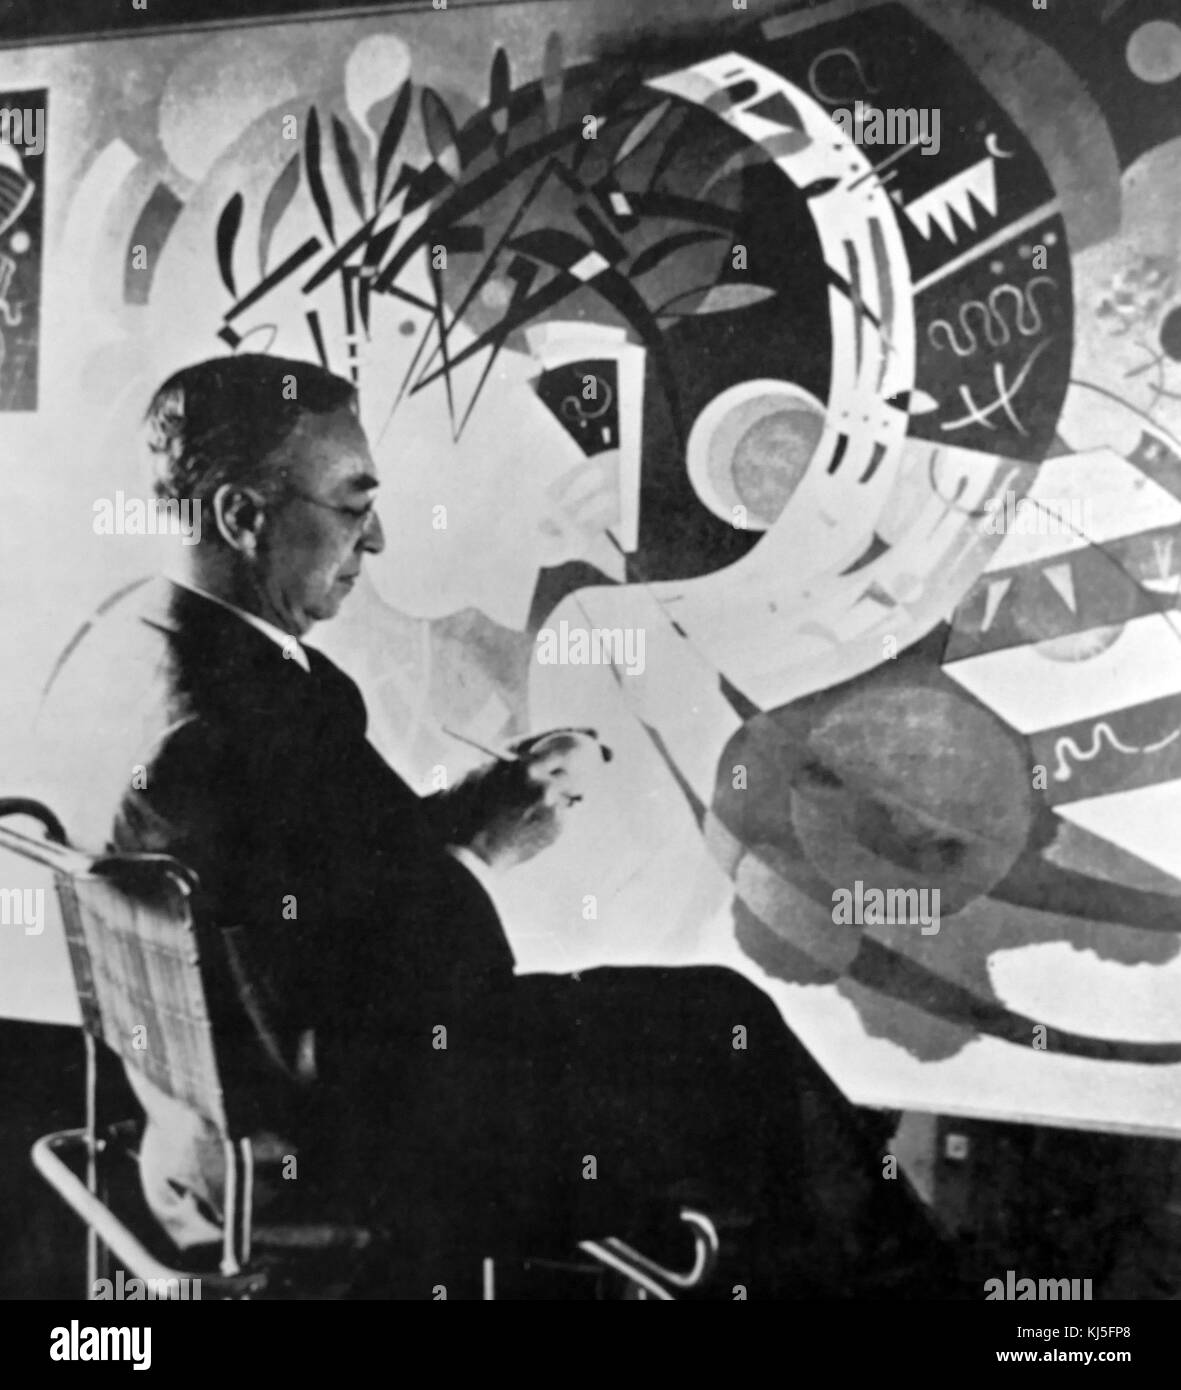 Fotografía de Paul Klee (1879-1940), un artista suizo-alemán que influyó en el expresionismo, el cubismo y el surrealismo. Fecha Siglo XX Foto de stock